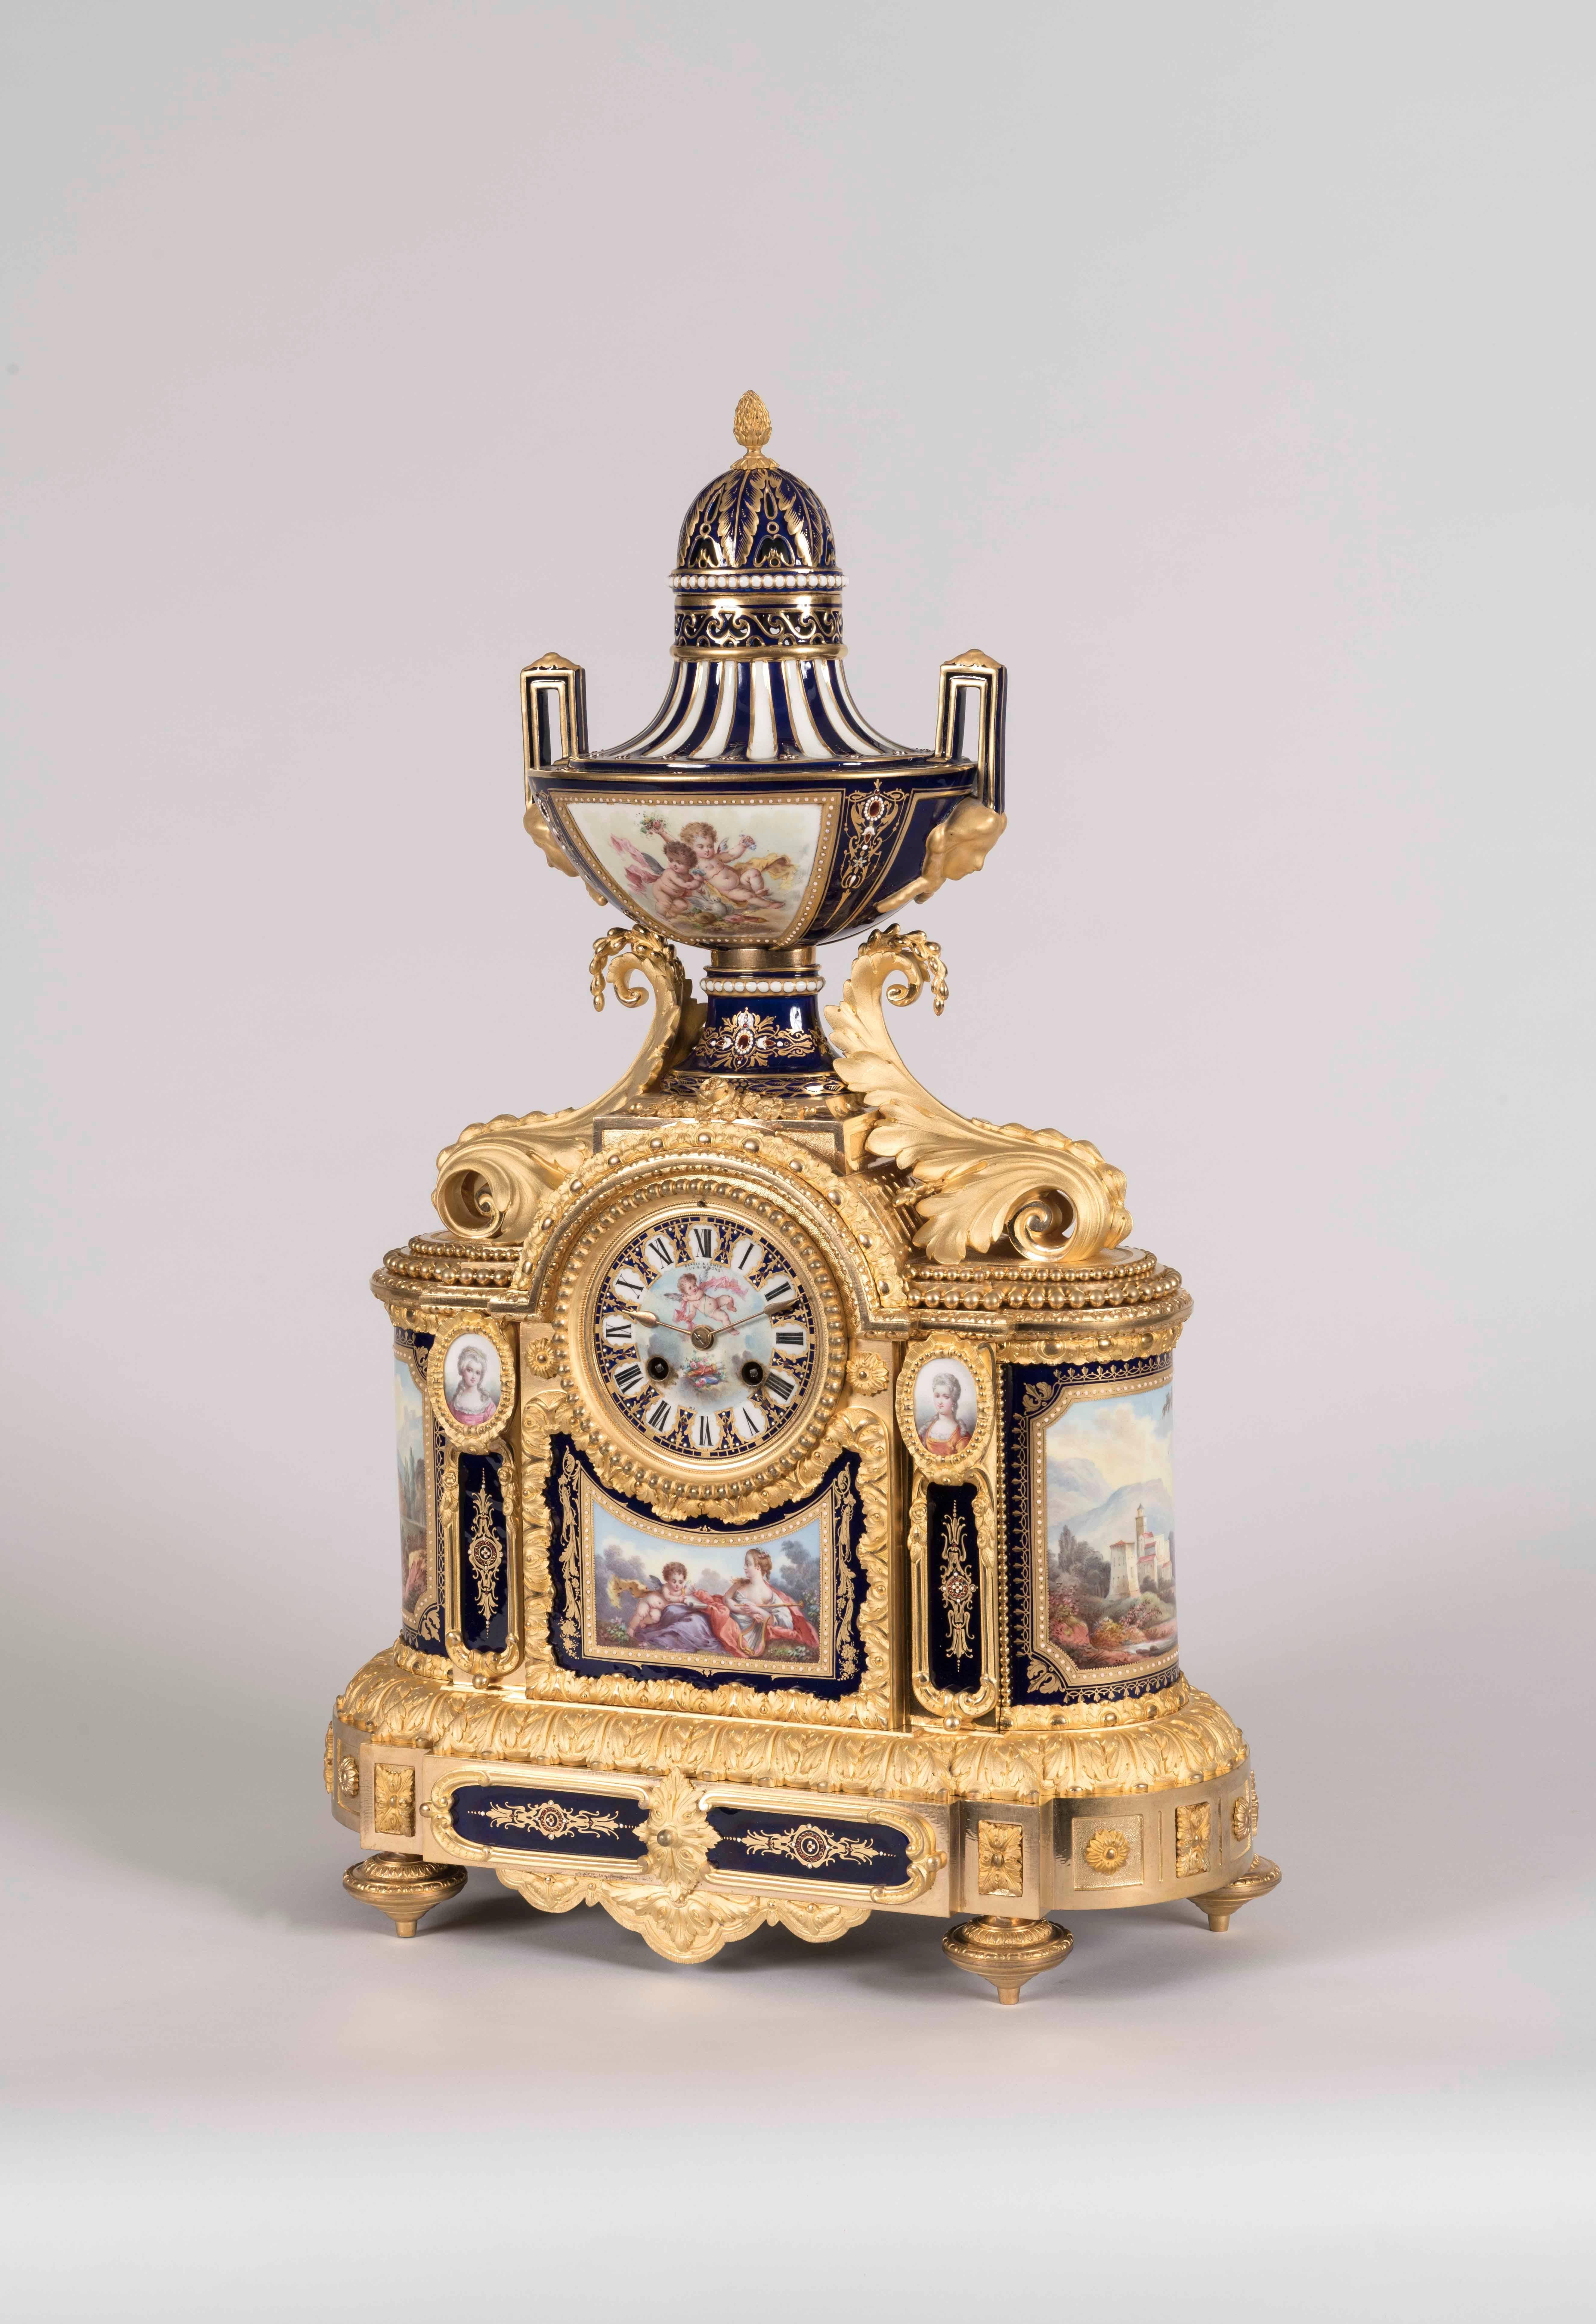 Une Garniture de Chemineé dans le goût Louis XVI
Par Arnold & Lewis (feu Simmons)

La pendule de cheminée et ses deux vases assortis sont en porcelaine de style Sèvres, décorée à la main et en polychromie, avec des reflets dorés et des bronzes